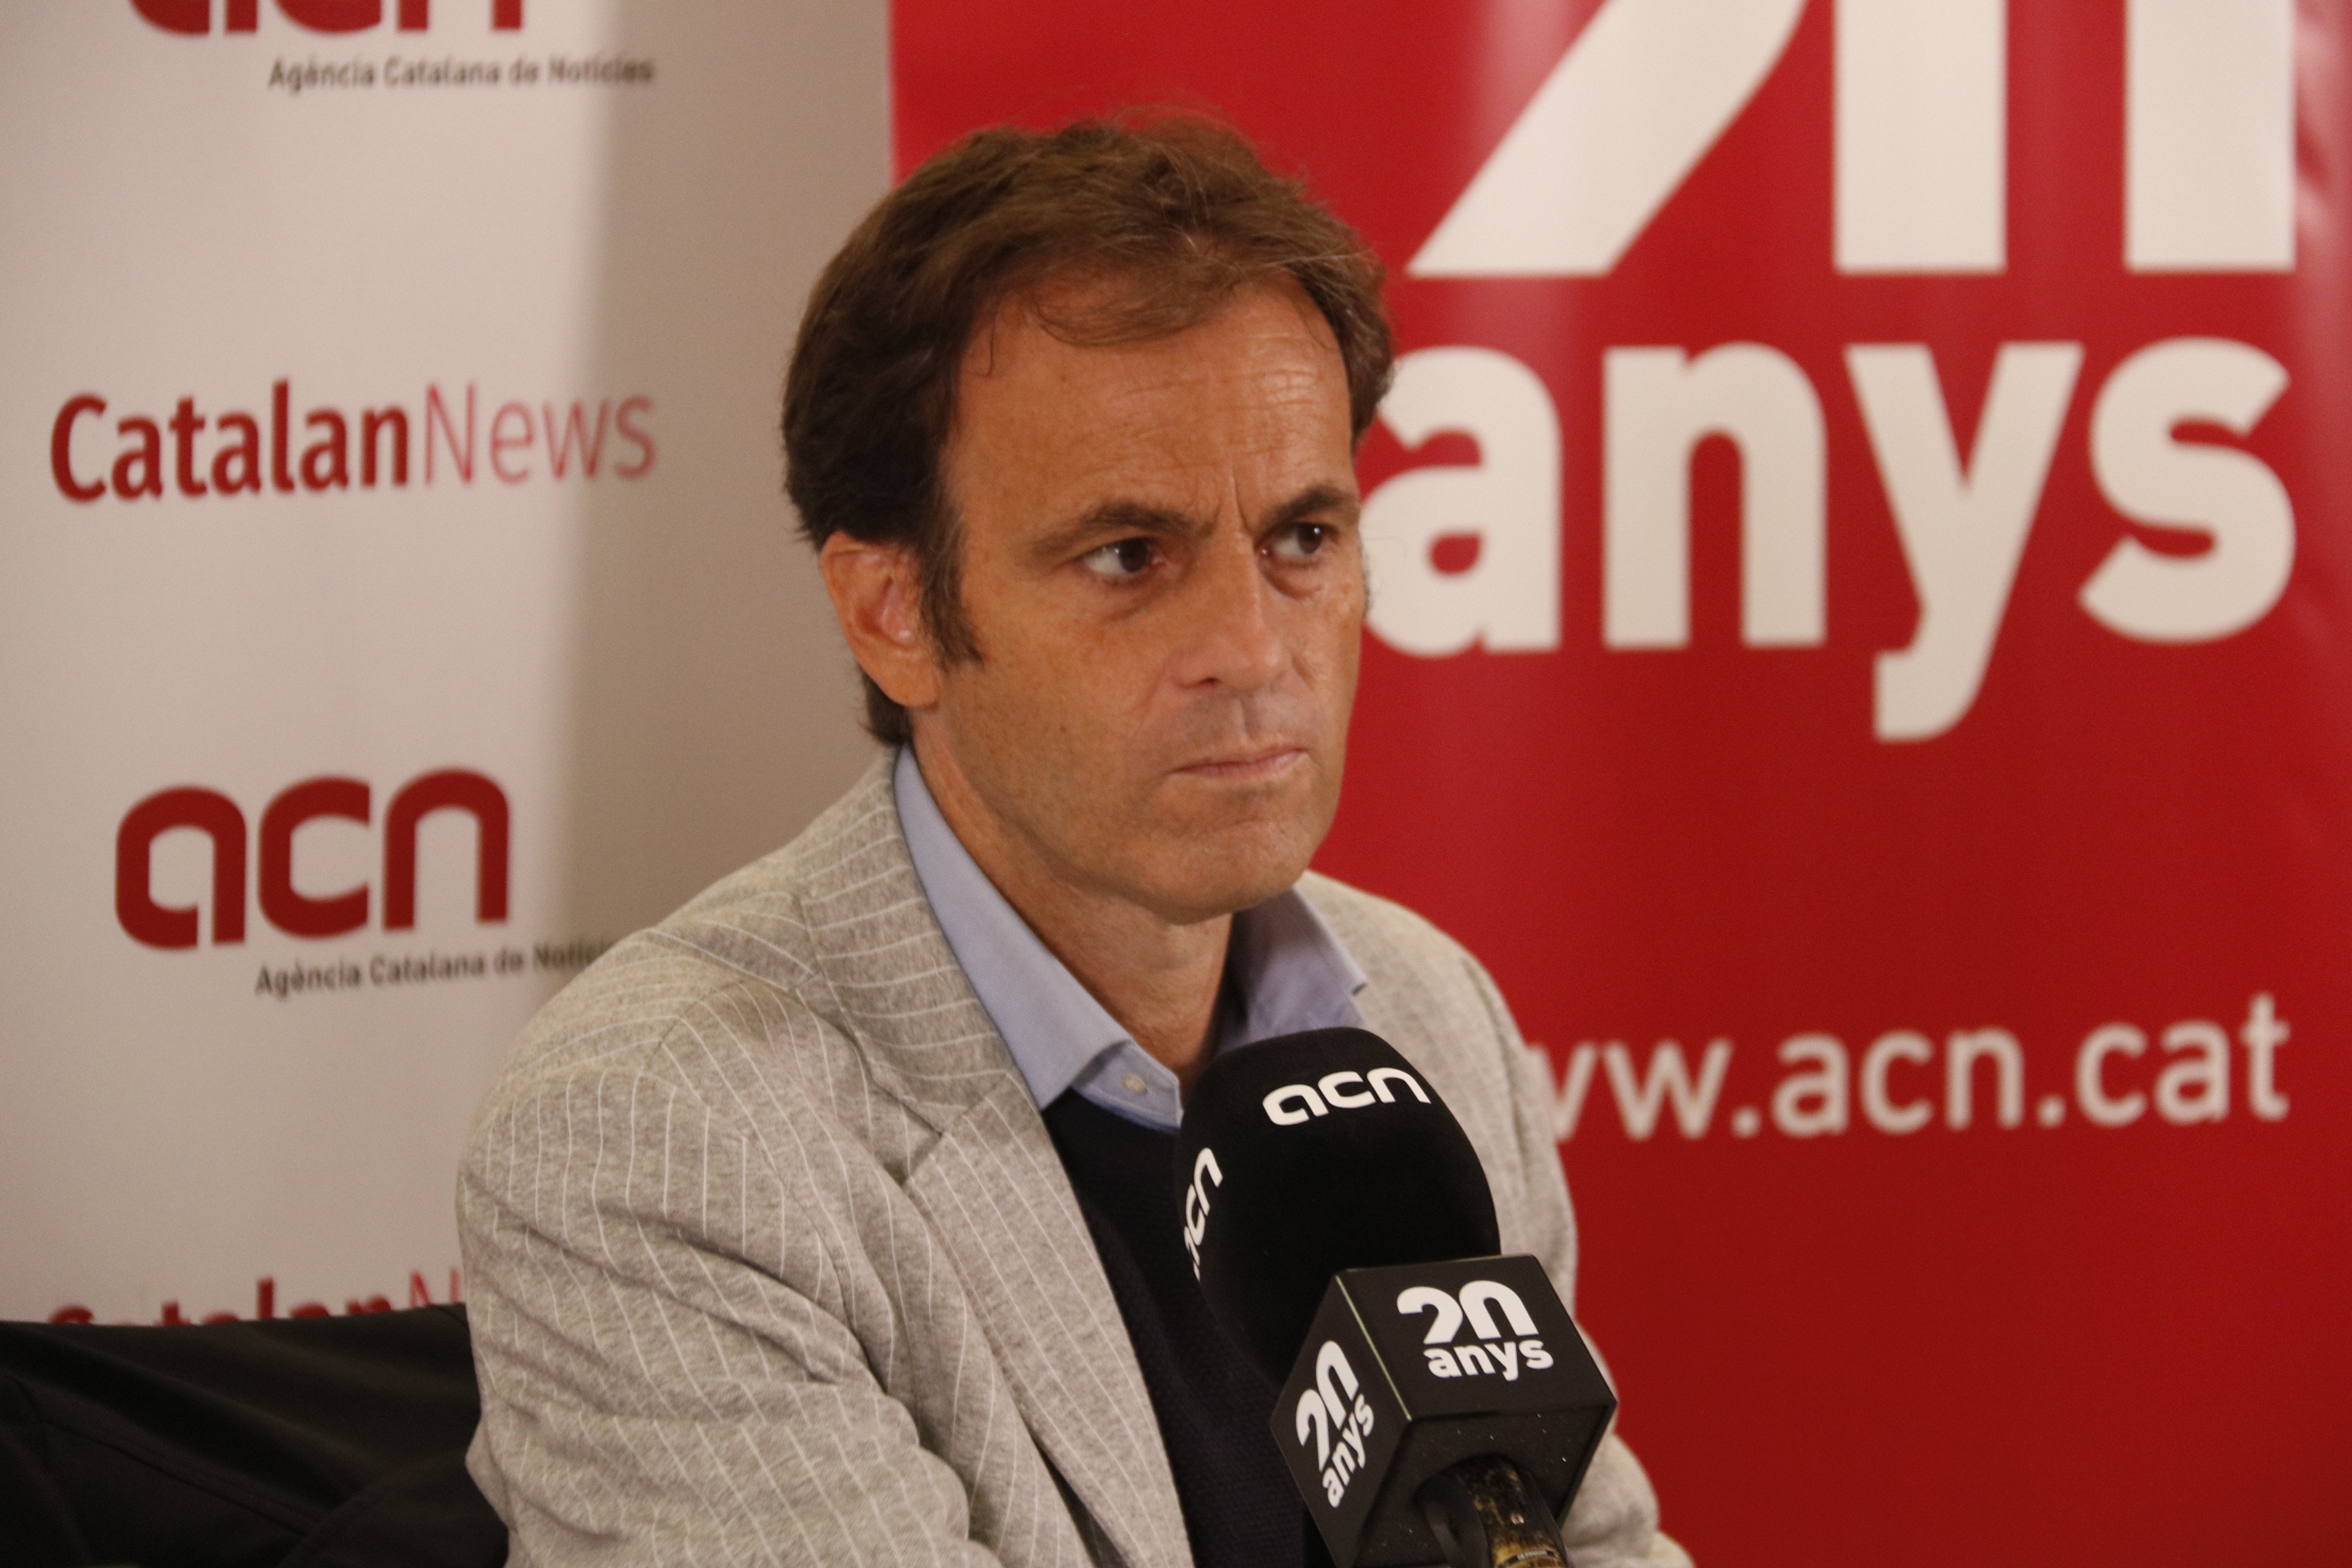 Asens vol finançament propi i blindar la "condició nacional" de Catalunya